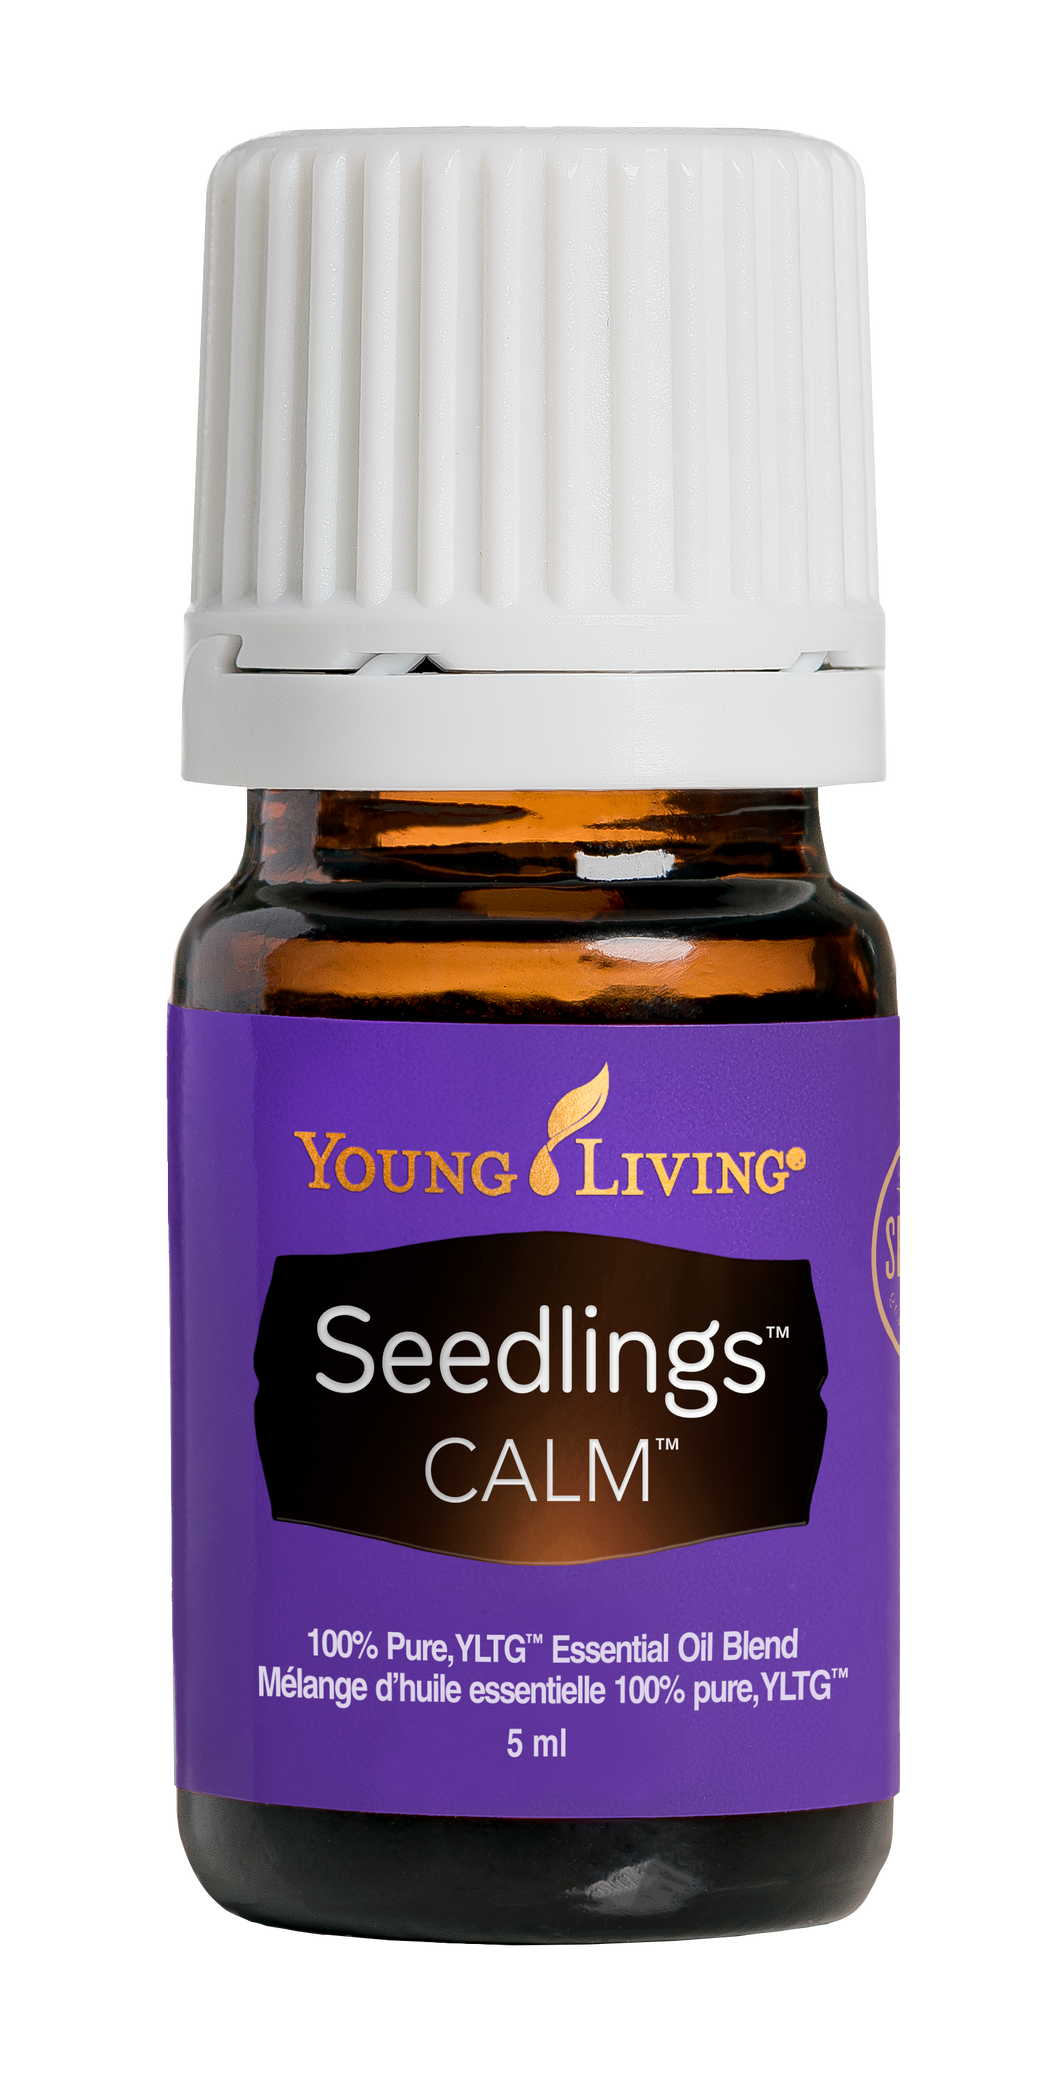 YL - Essential Oil Blend - Seedlings - Calm